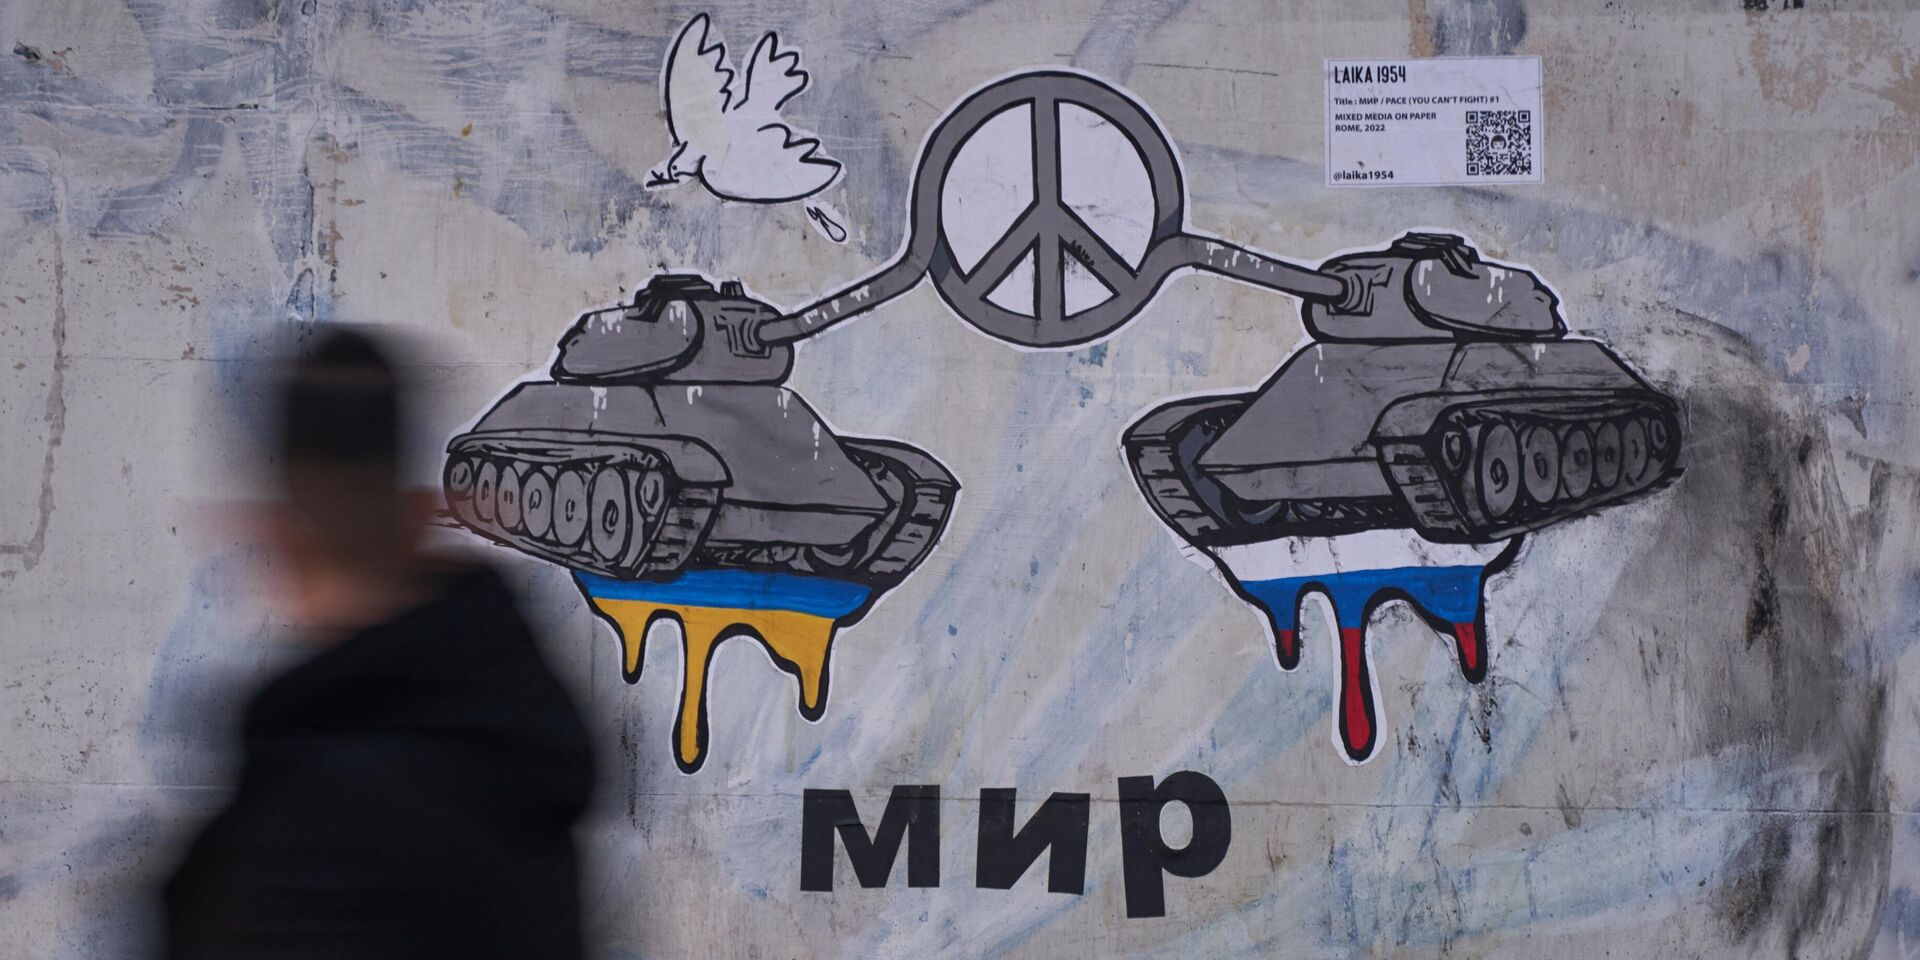 Граффити о мире между Россией и Украиной появилось в Риме - ИноСМИ, 1920, 22.02.2022